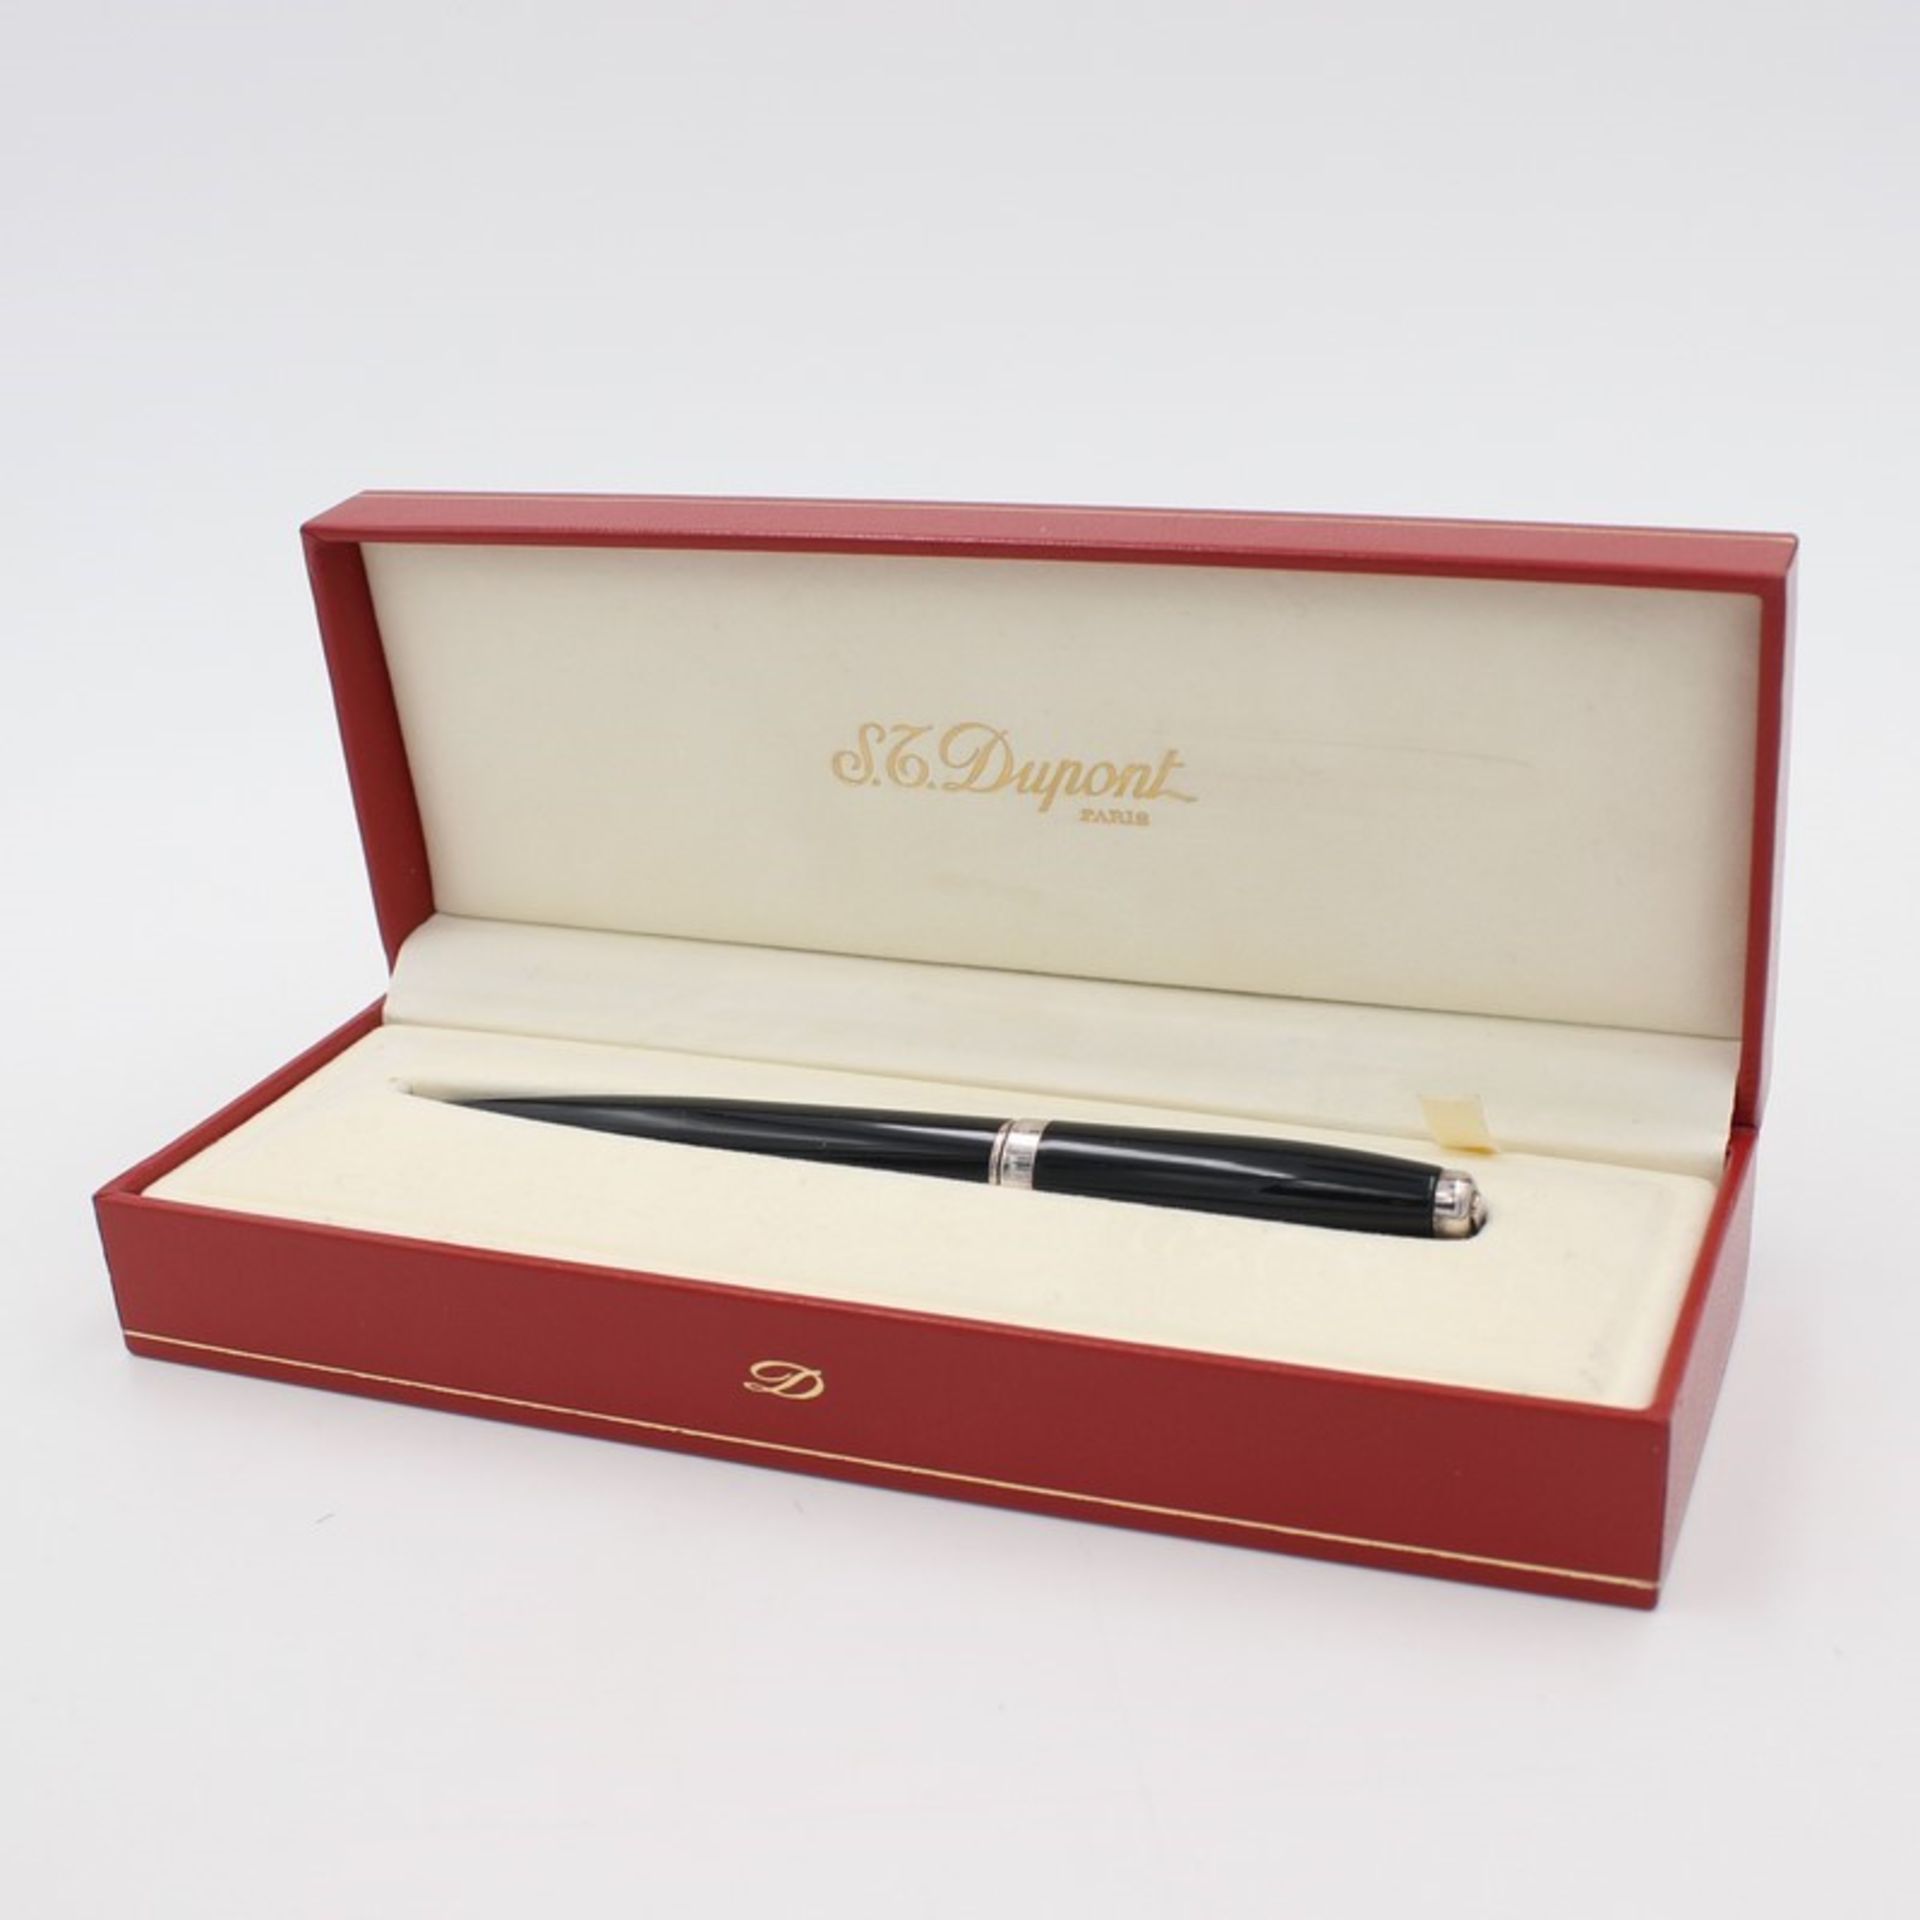 Dupont - Kugelschreiber schwarzes Edelharzgehäuse, tlw. versilbert, Nr. 5 J9 BN90,